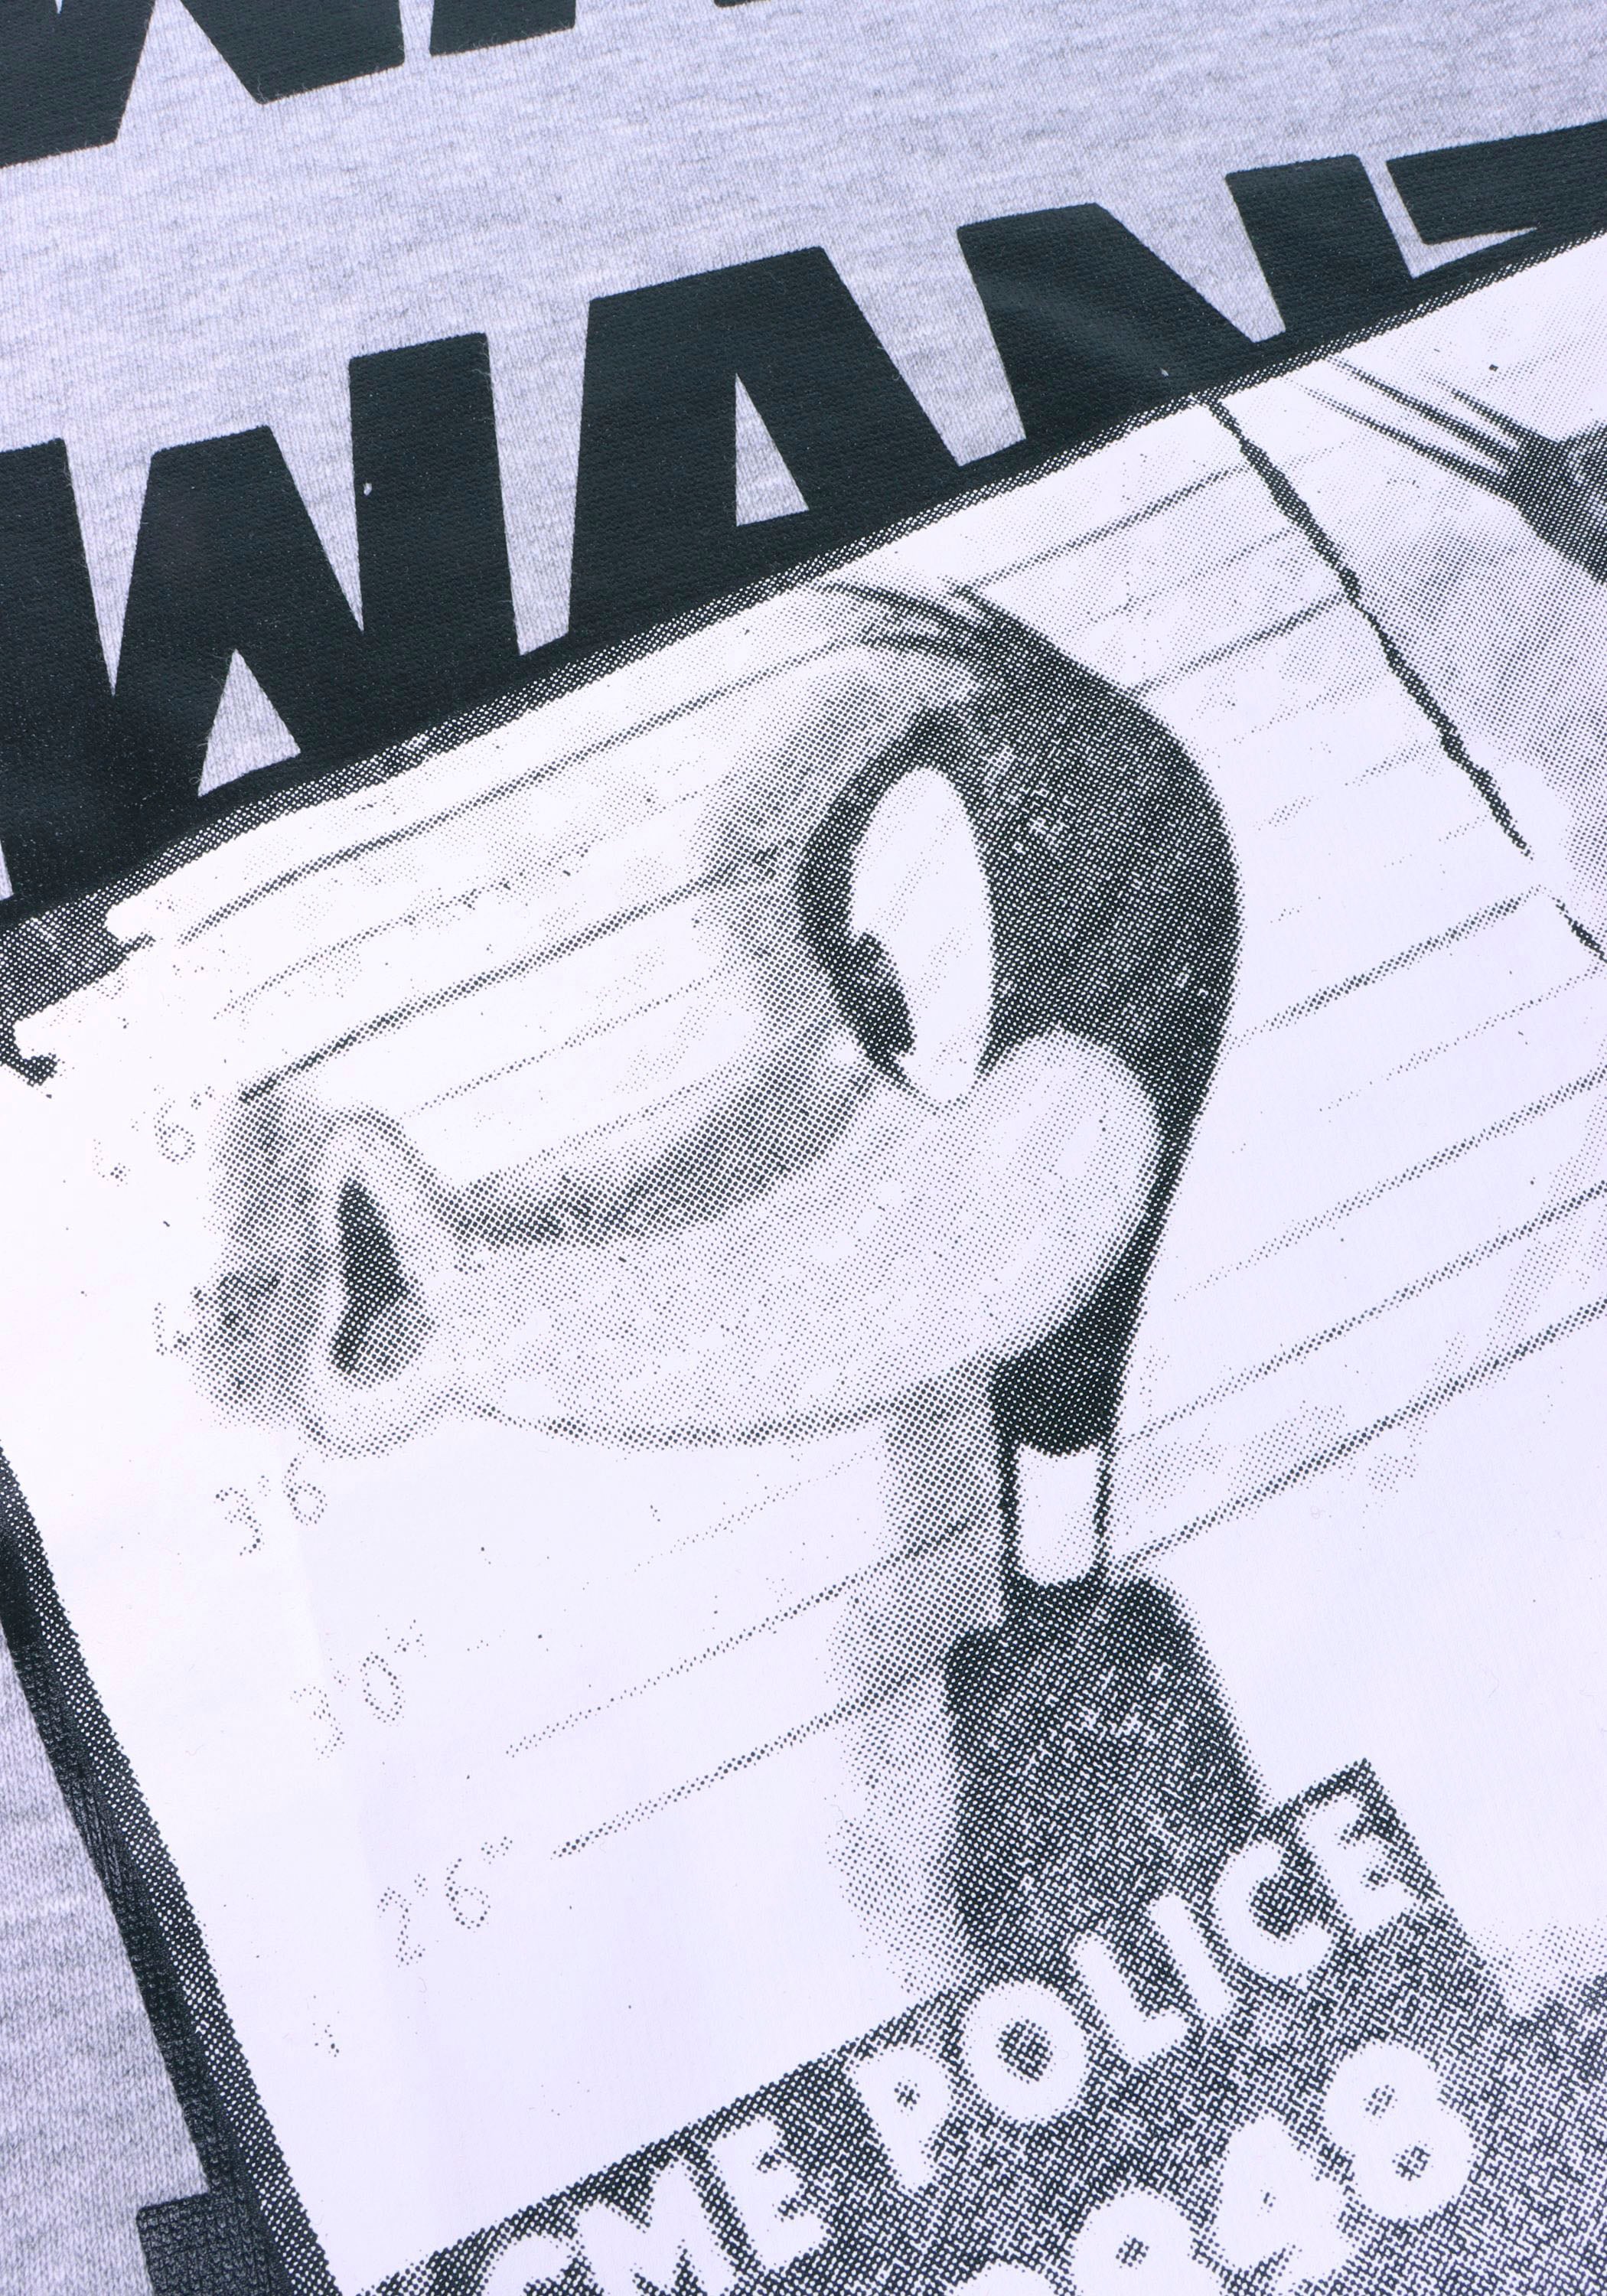 Capelli New York Hoodie, "Wanted Daffy Duck" Lizenz Design. Druck auf Vorder- & Rückseite.